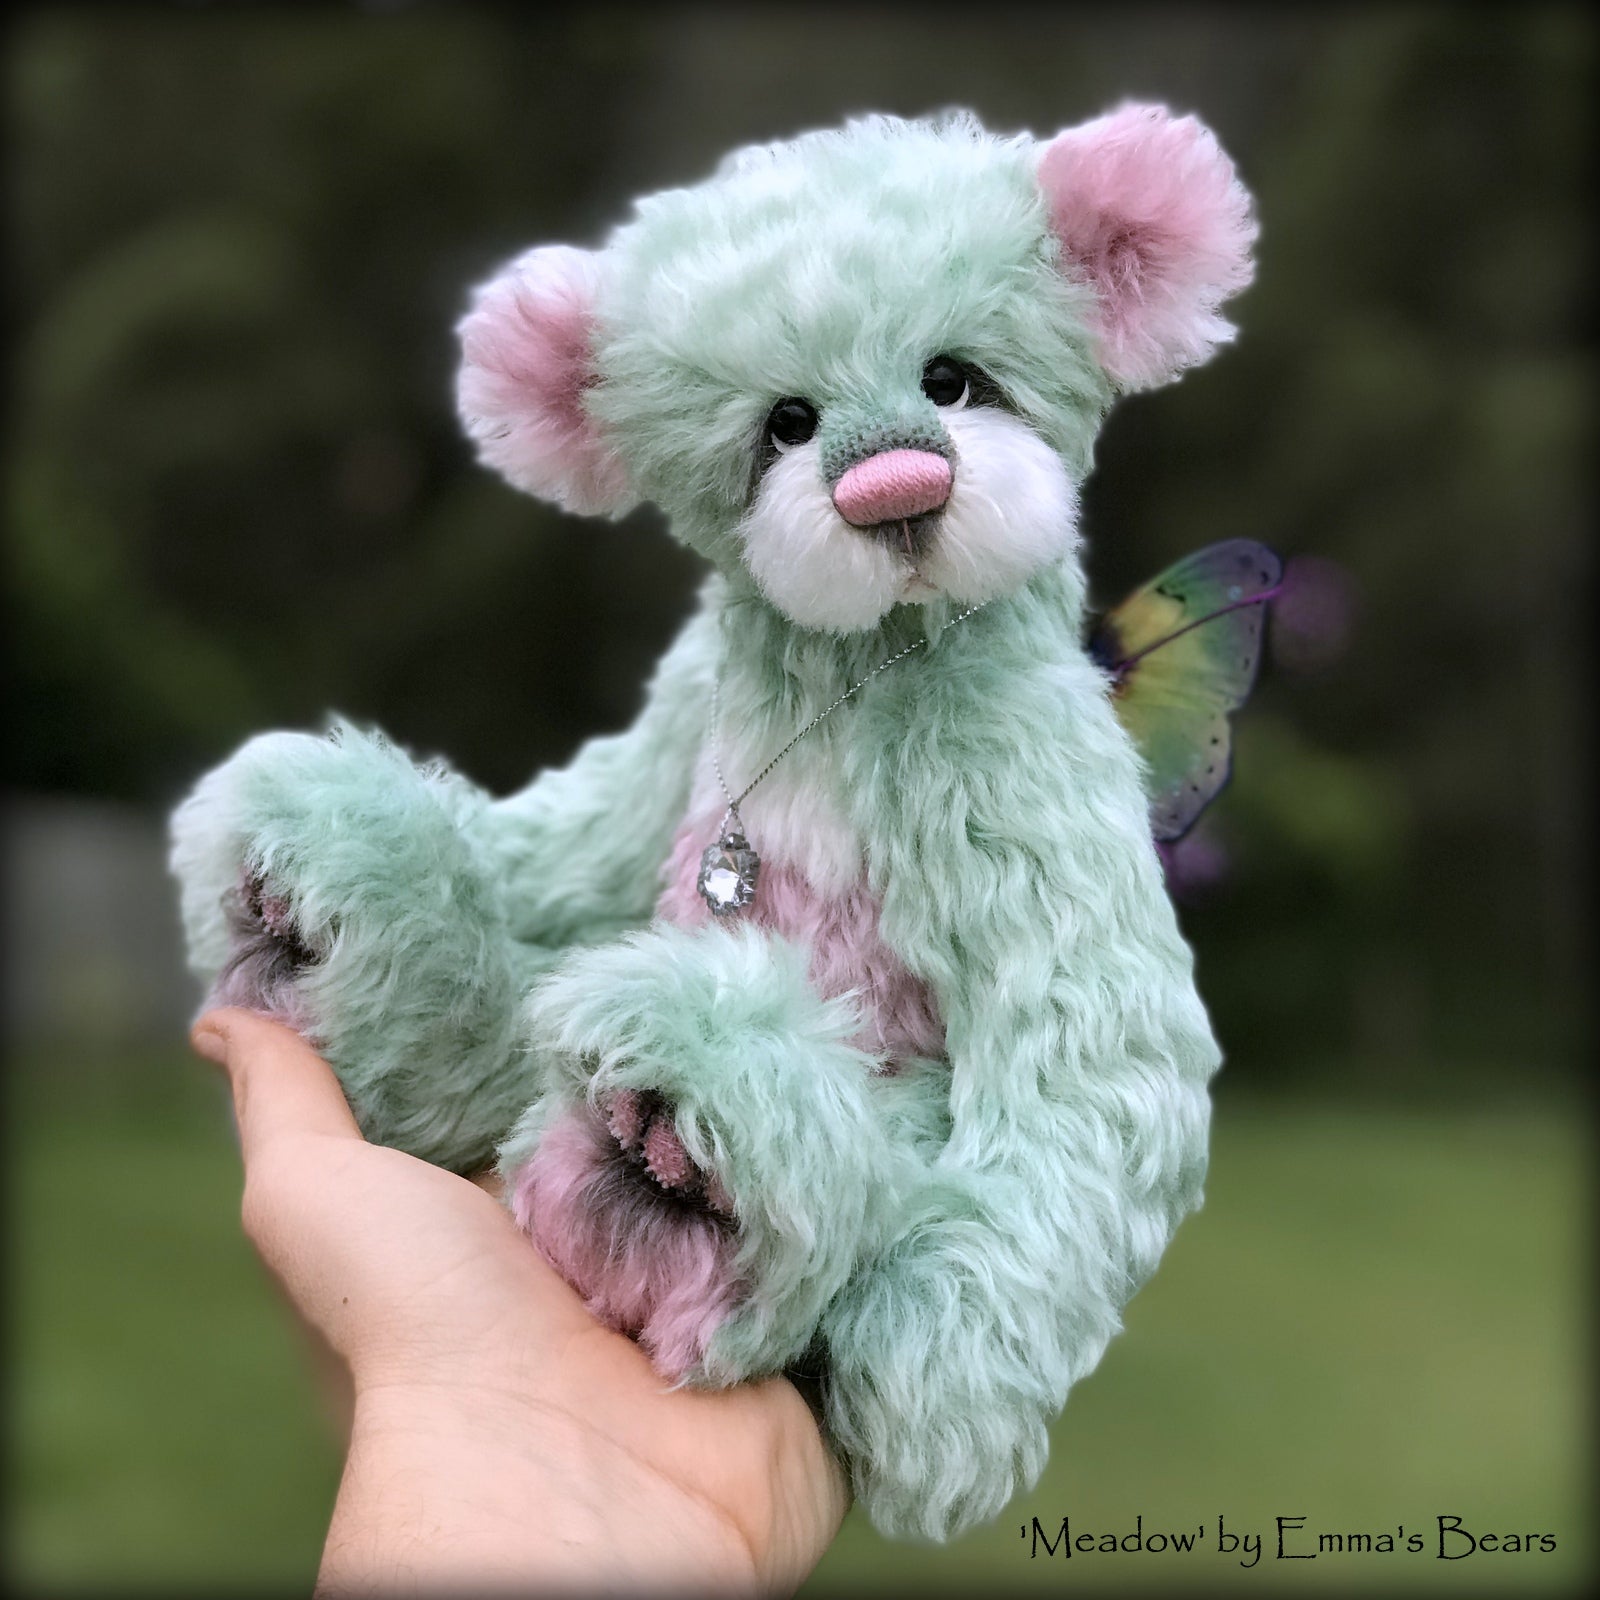 Meadow - 10" Hand dyed artist Easter Butterfly Bear by Emma's Bears - OOAK